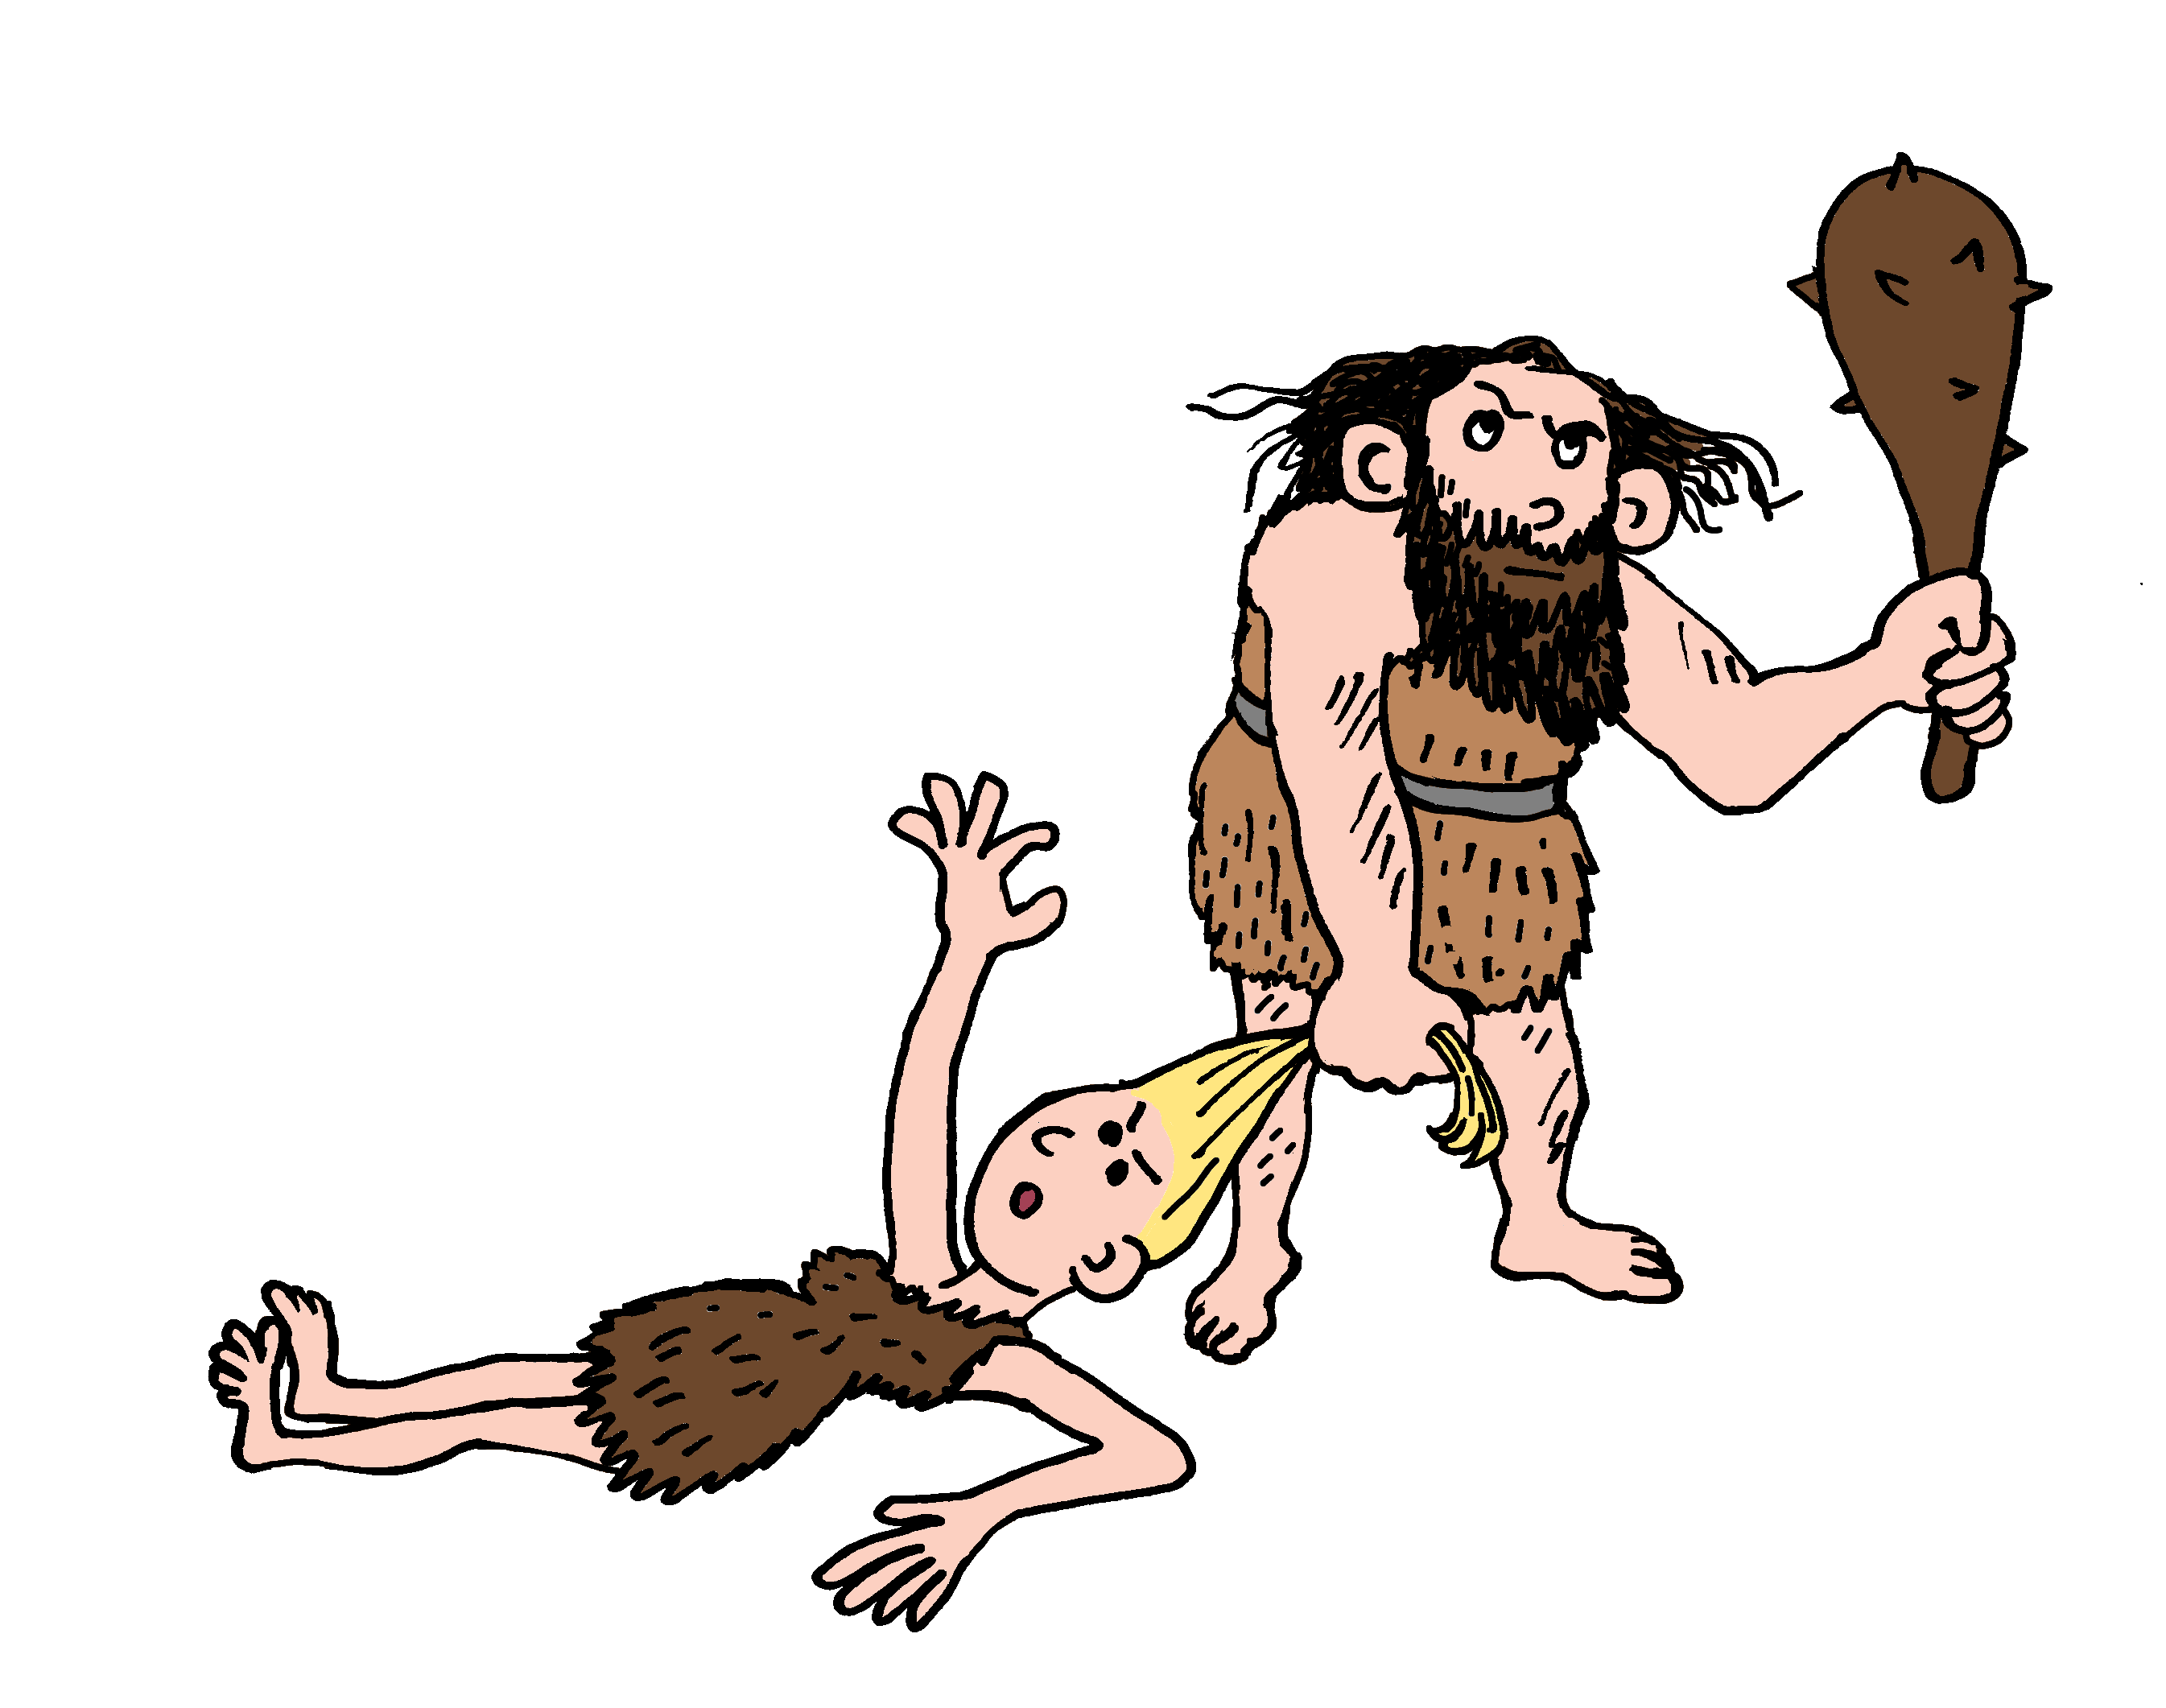 Hommes préhistoriques